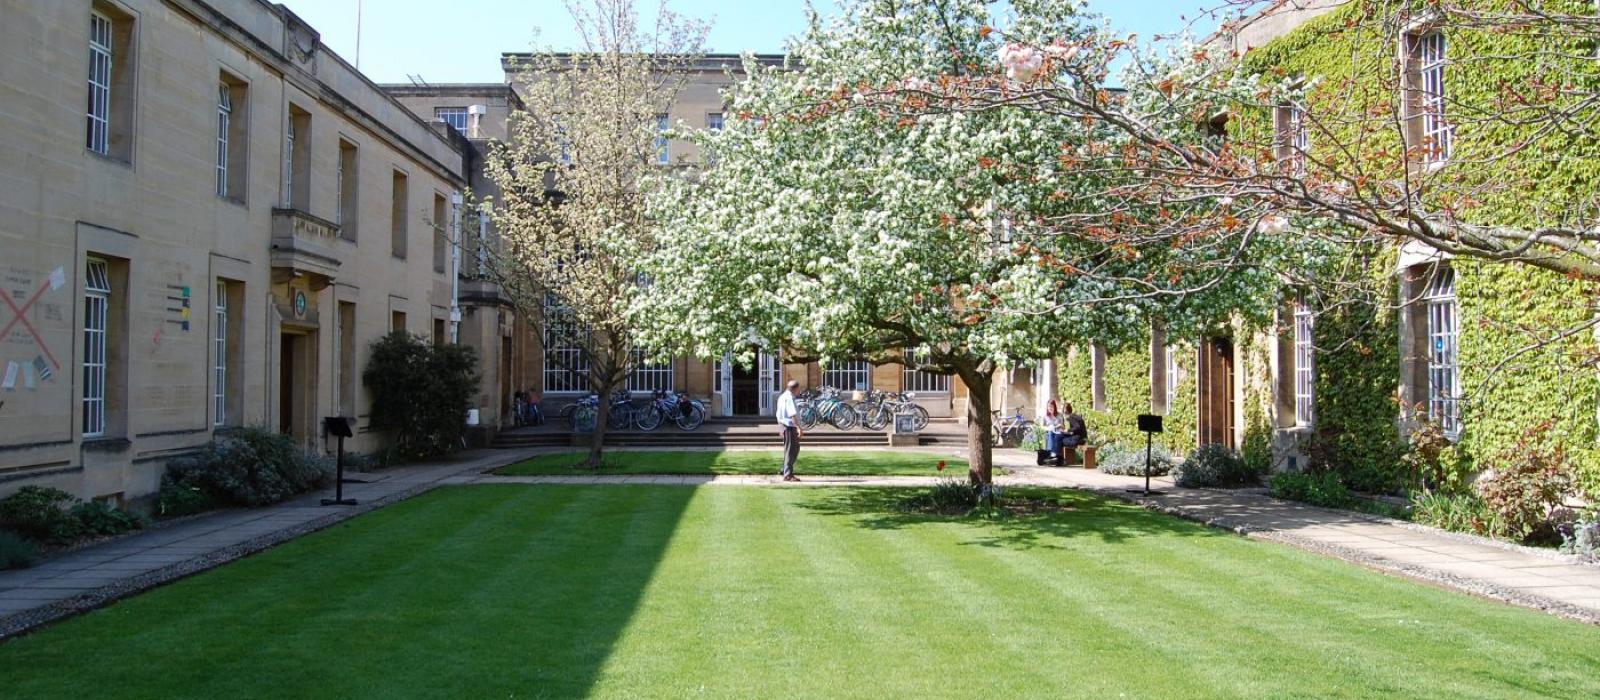 Quadrangle, Regent's Park College